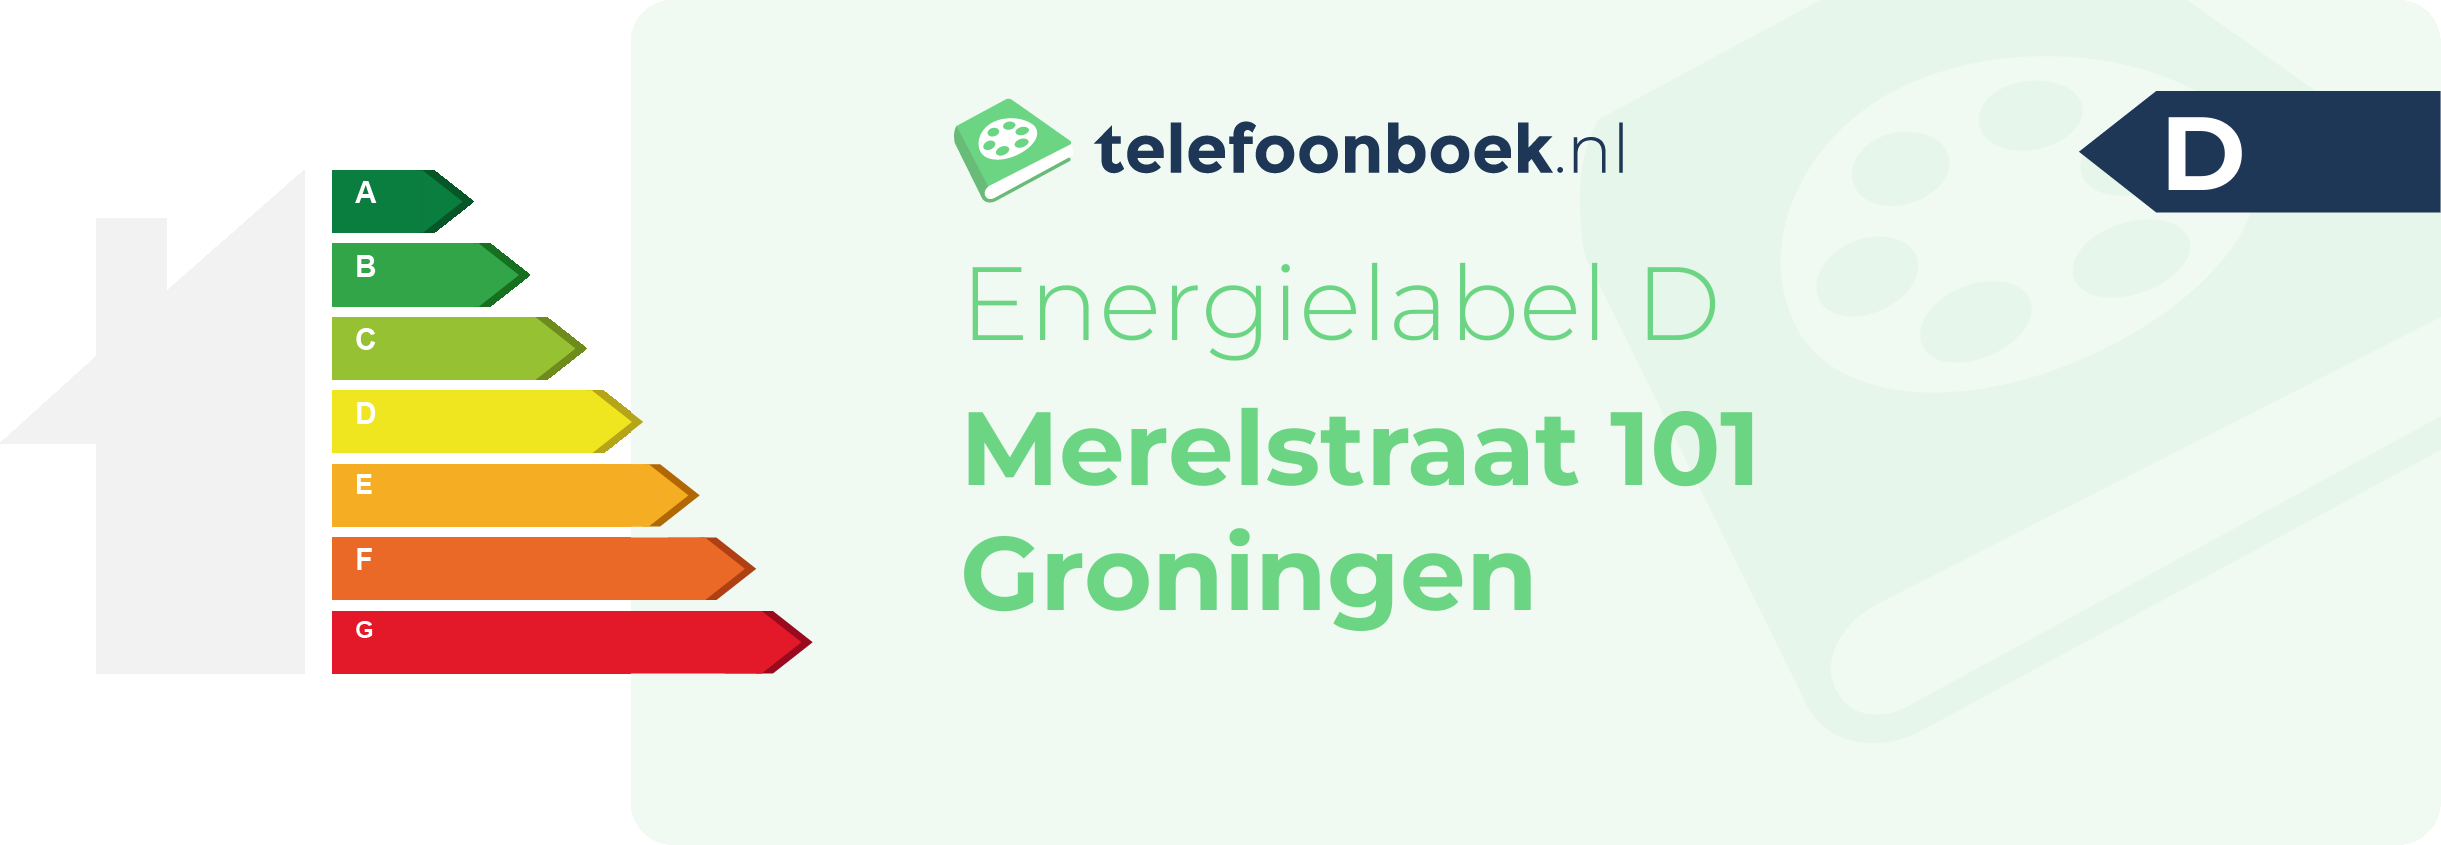 Energielabel Merelstraat 101 Groningen